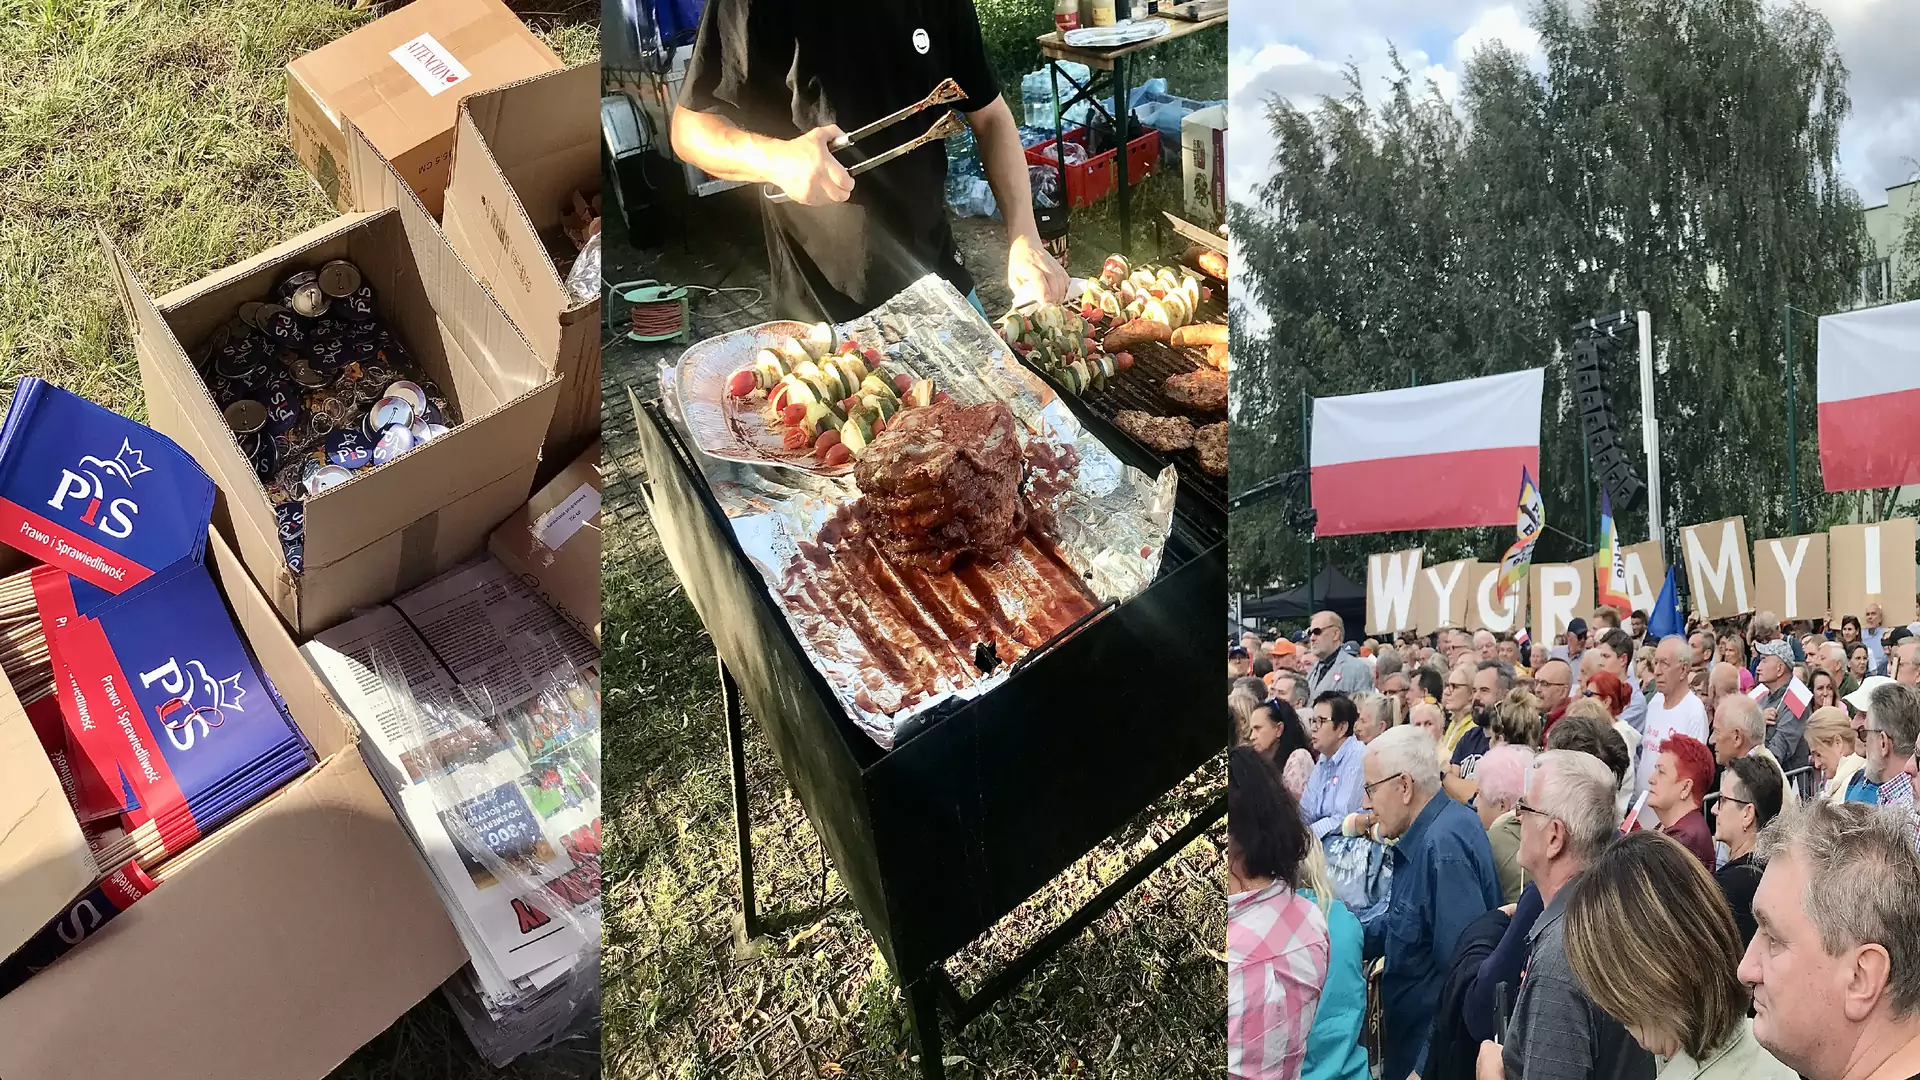 Piwo, kiełbasa, wata cukrowa — tak wyglądają wiece wyborcze w Polsce